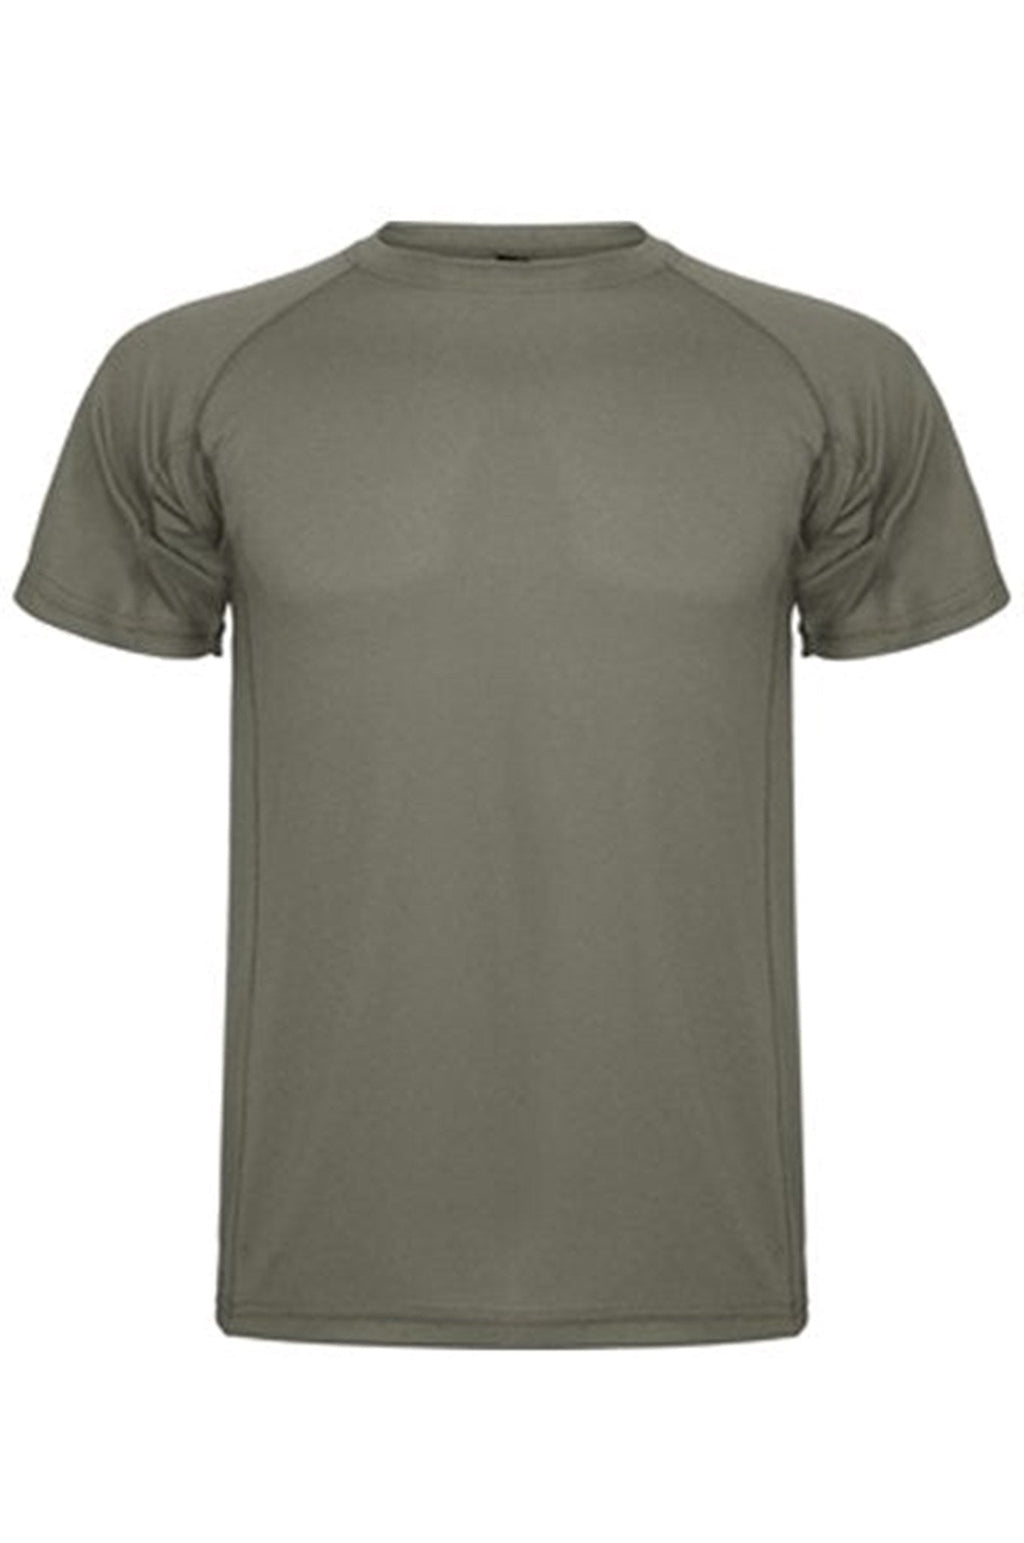 T-shirt d'entraînement - Green de l'armée